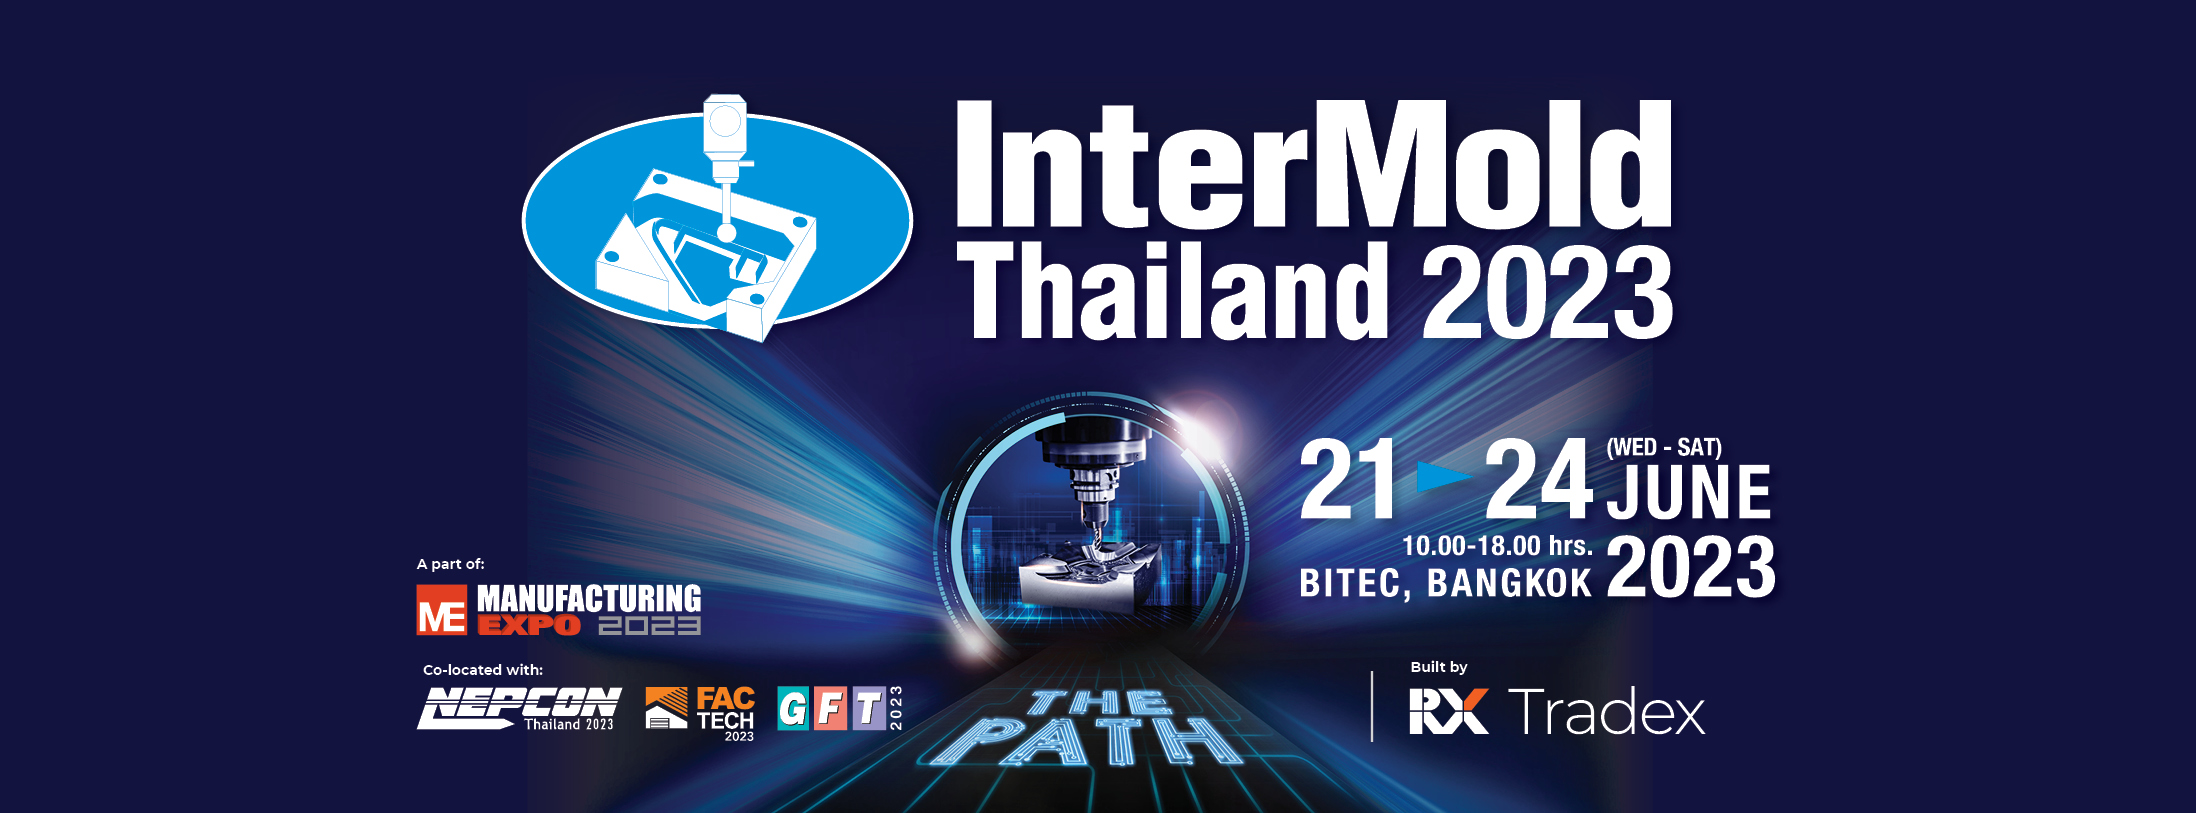 InterMold Thailand 2023, Bangkok, Thailand